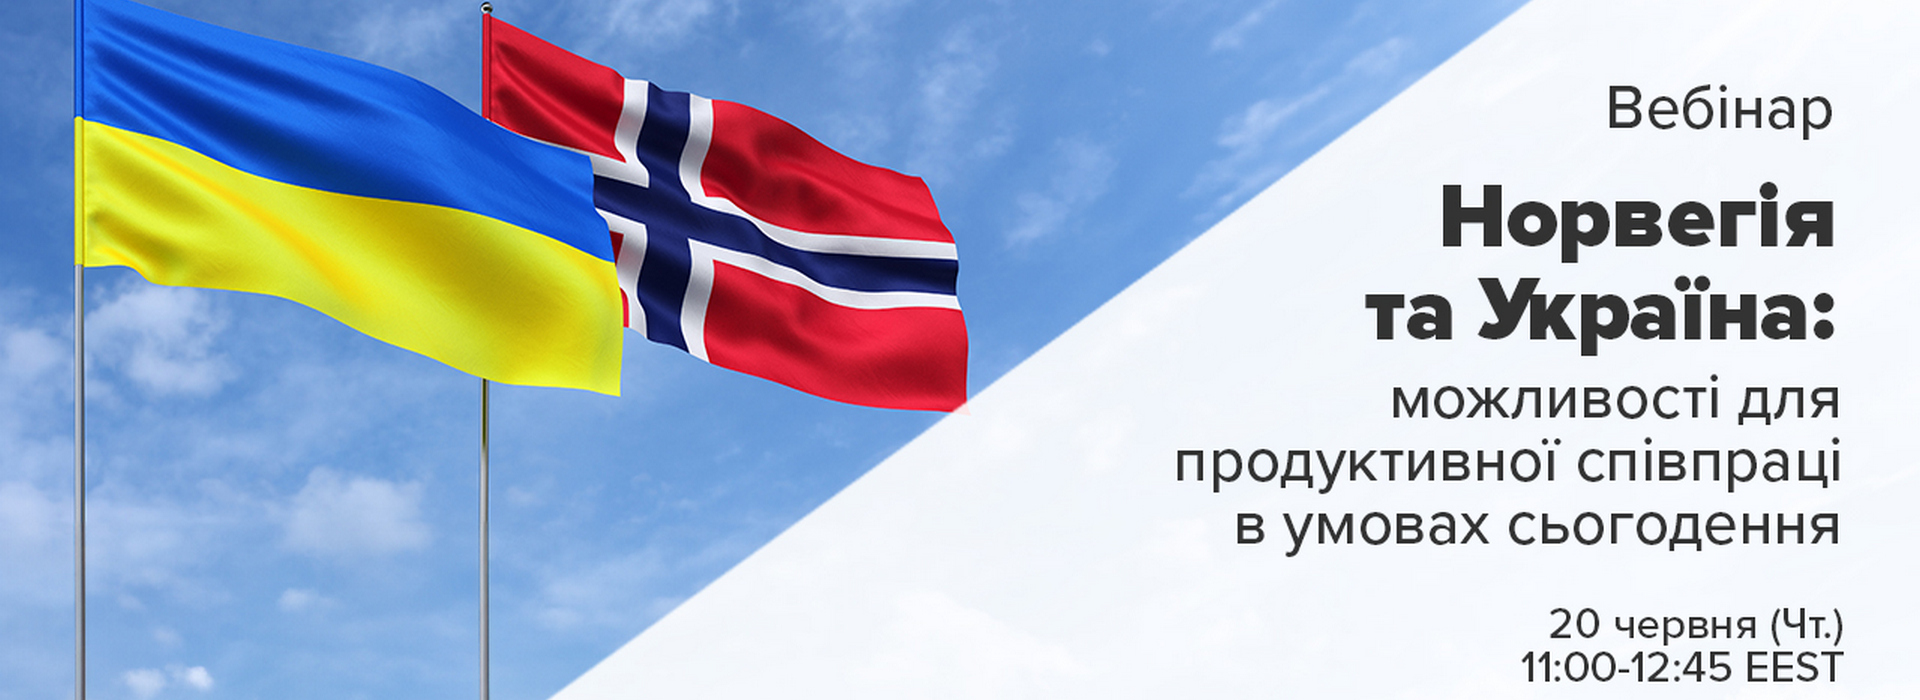 Онлайн-захід «Норвегія та Україна: Можливості продуктивної співпраці в сучасних умовах»